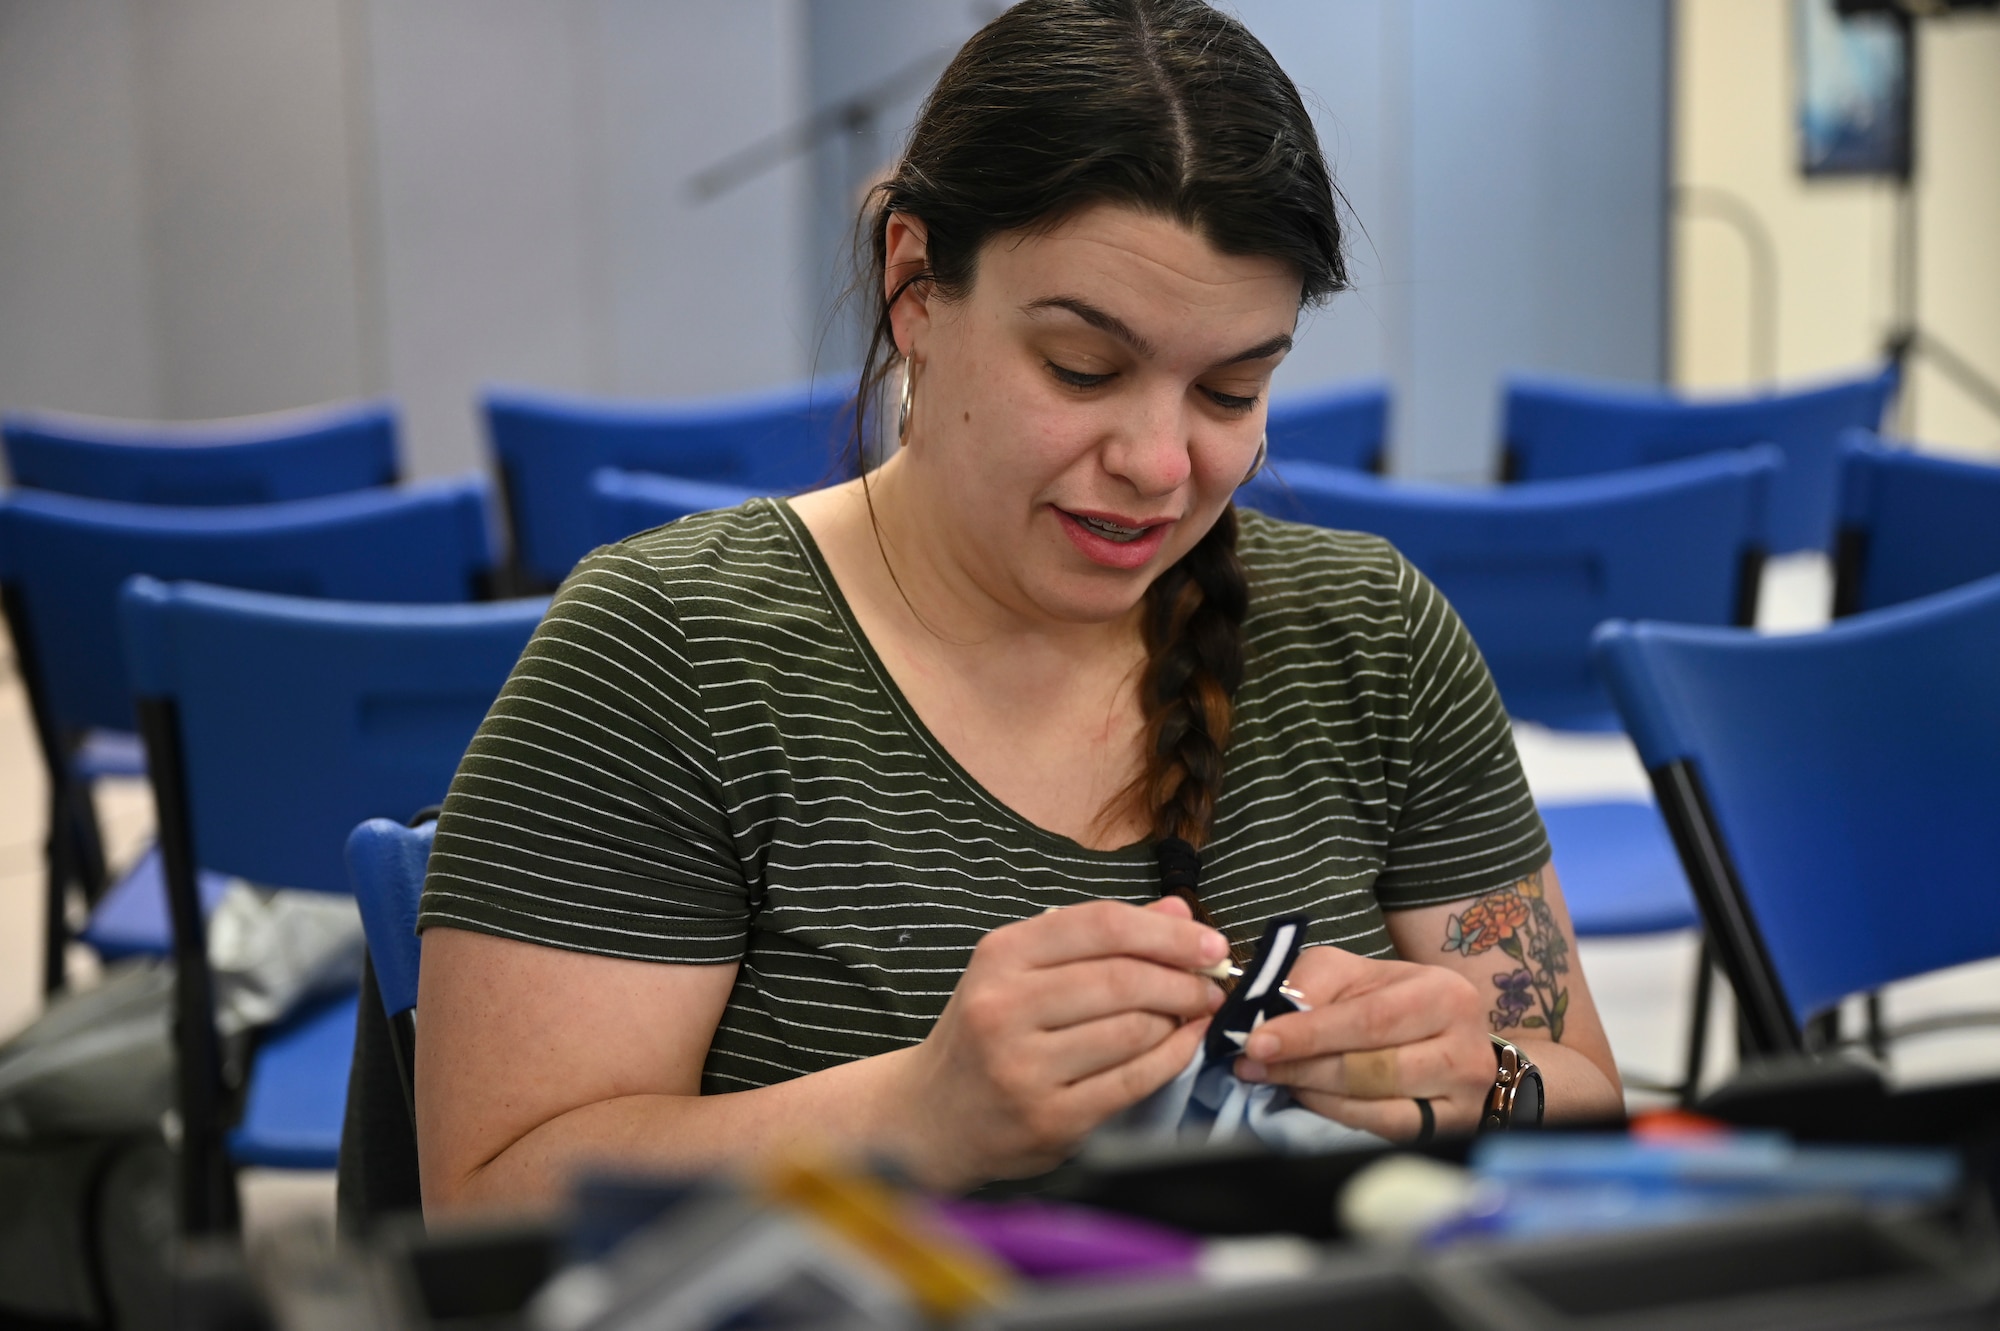 A woman sews a patch.